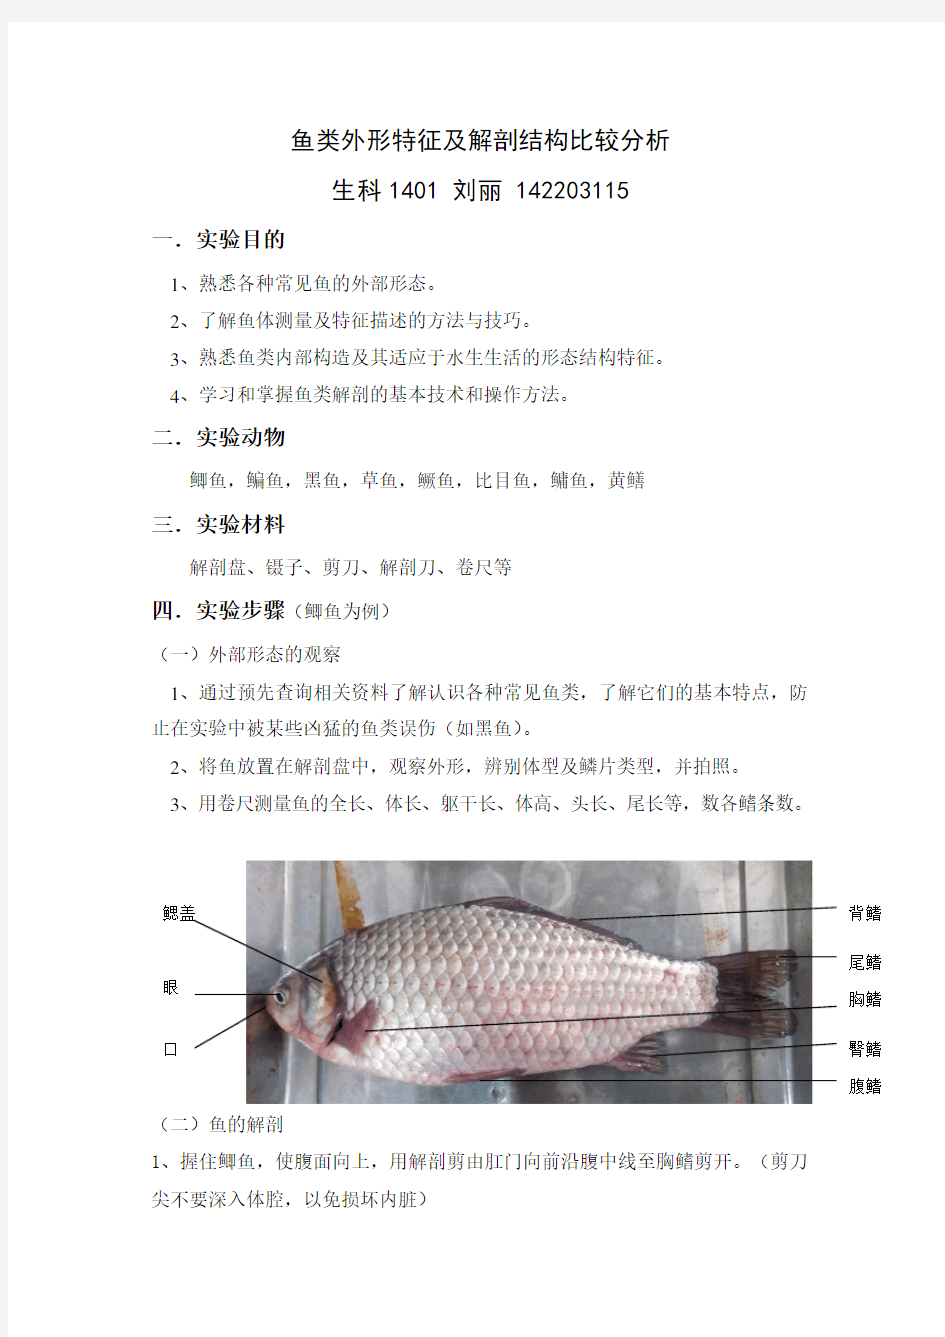 鱼类外形特征及解剖结构比较分析